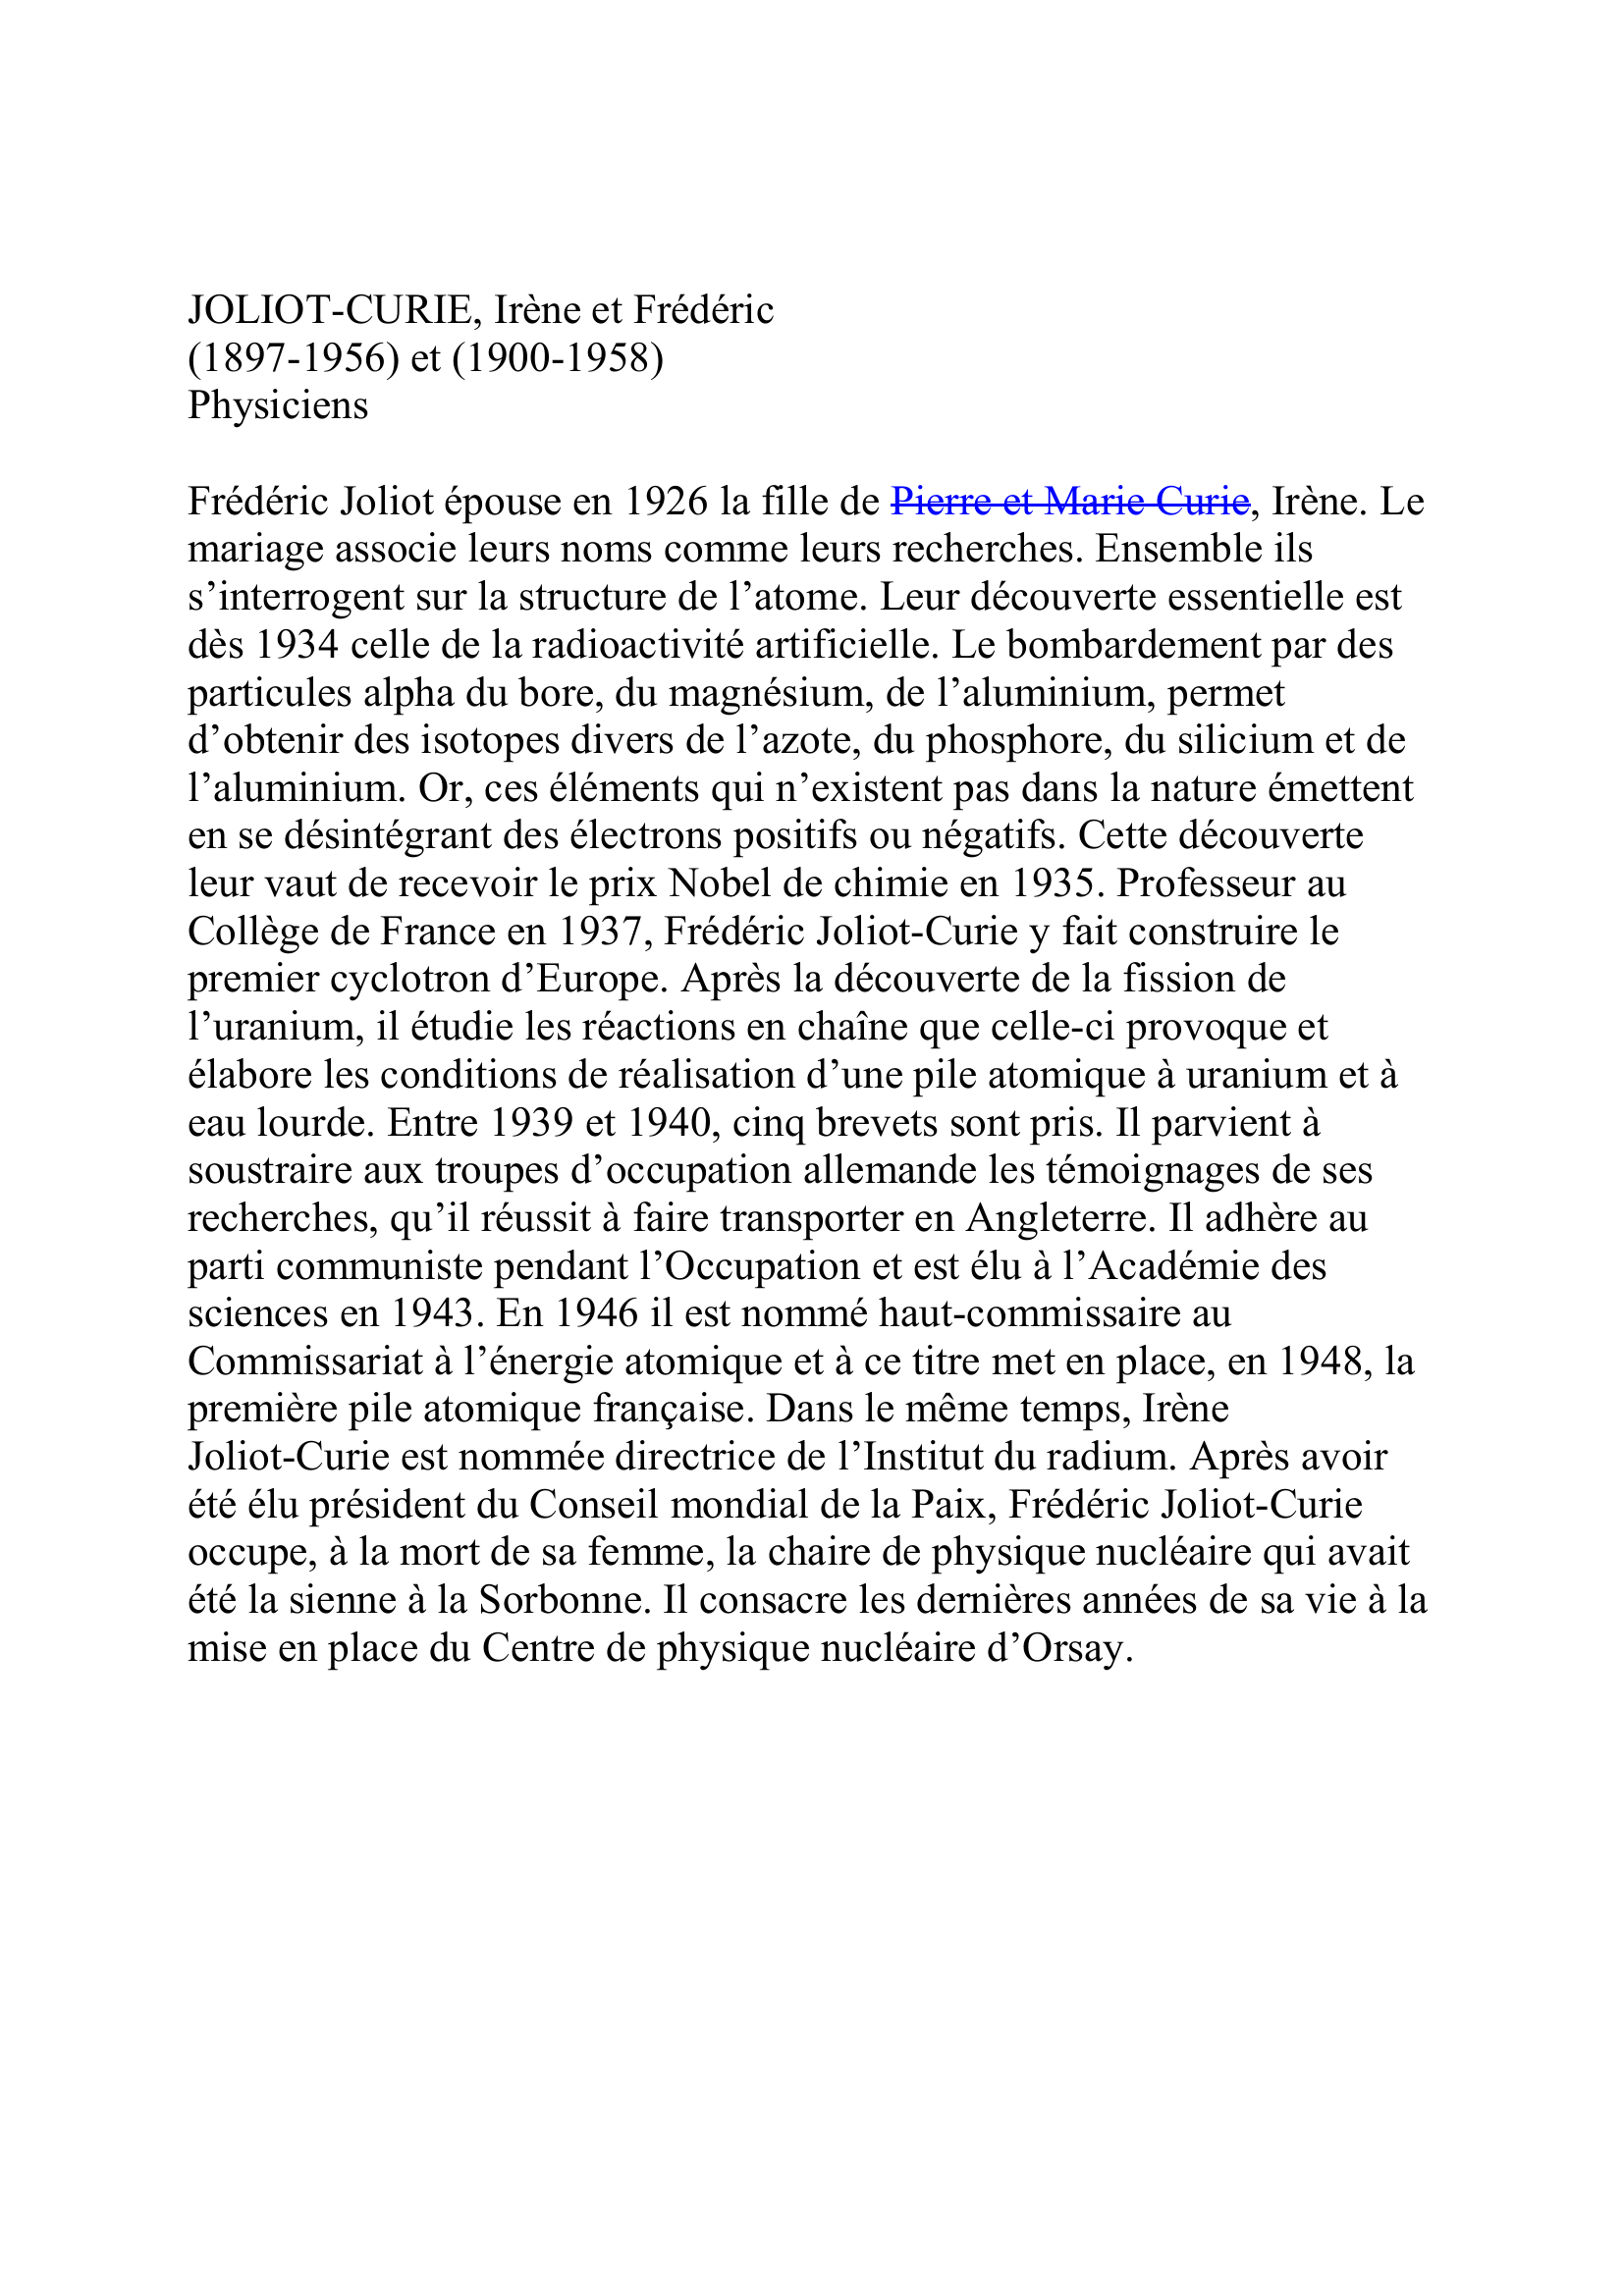 Prévisualisation du document Joliot-Curie Irène et Frédéric Physiciens français